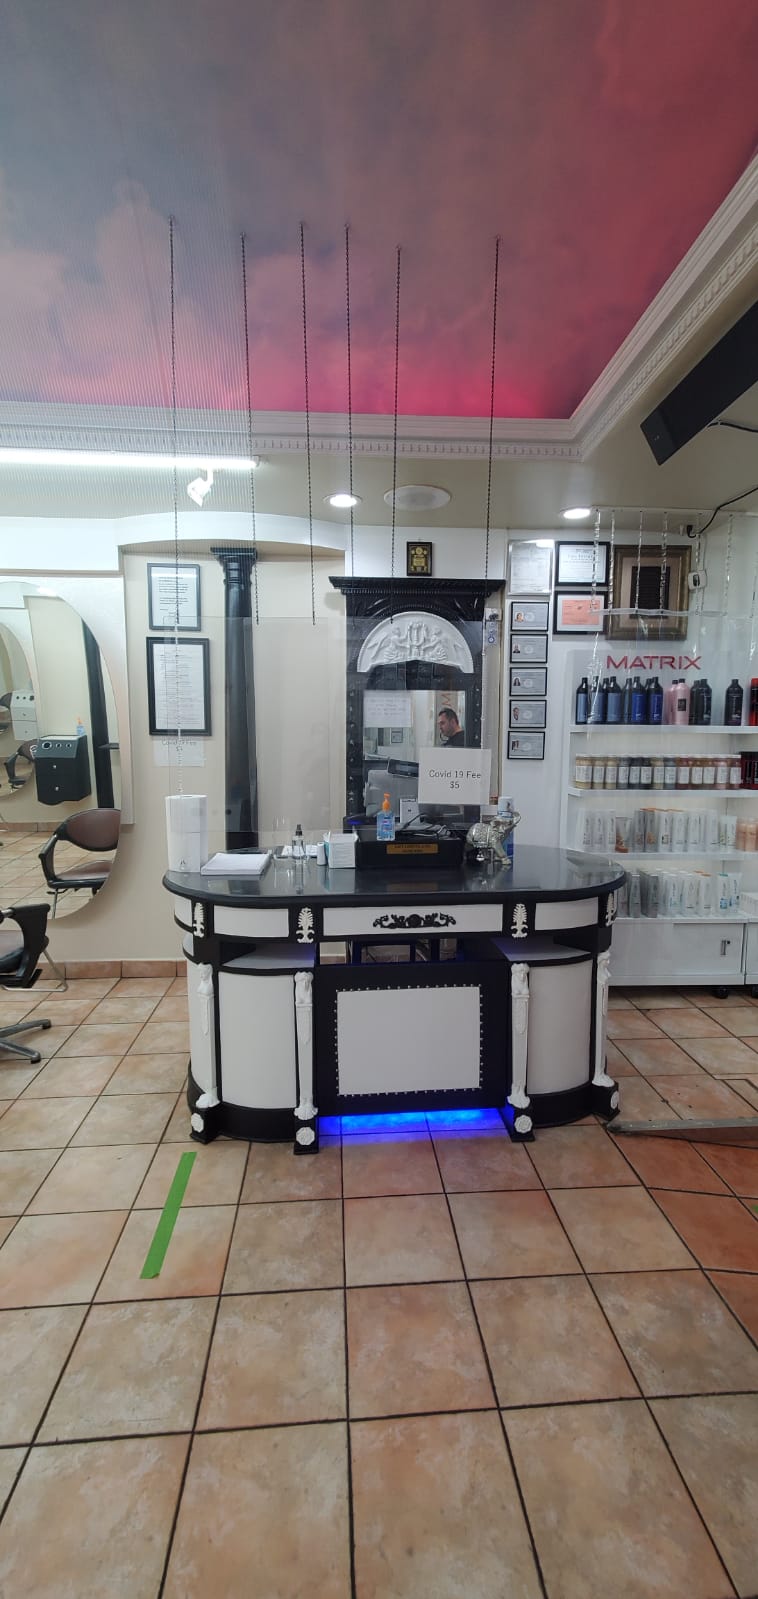 Belextens Hair Salon inc | 188-17 Union Tpke, Fresh Meadows, NY 11366 | Phone: (718) 454-0444